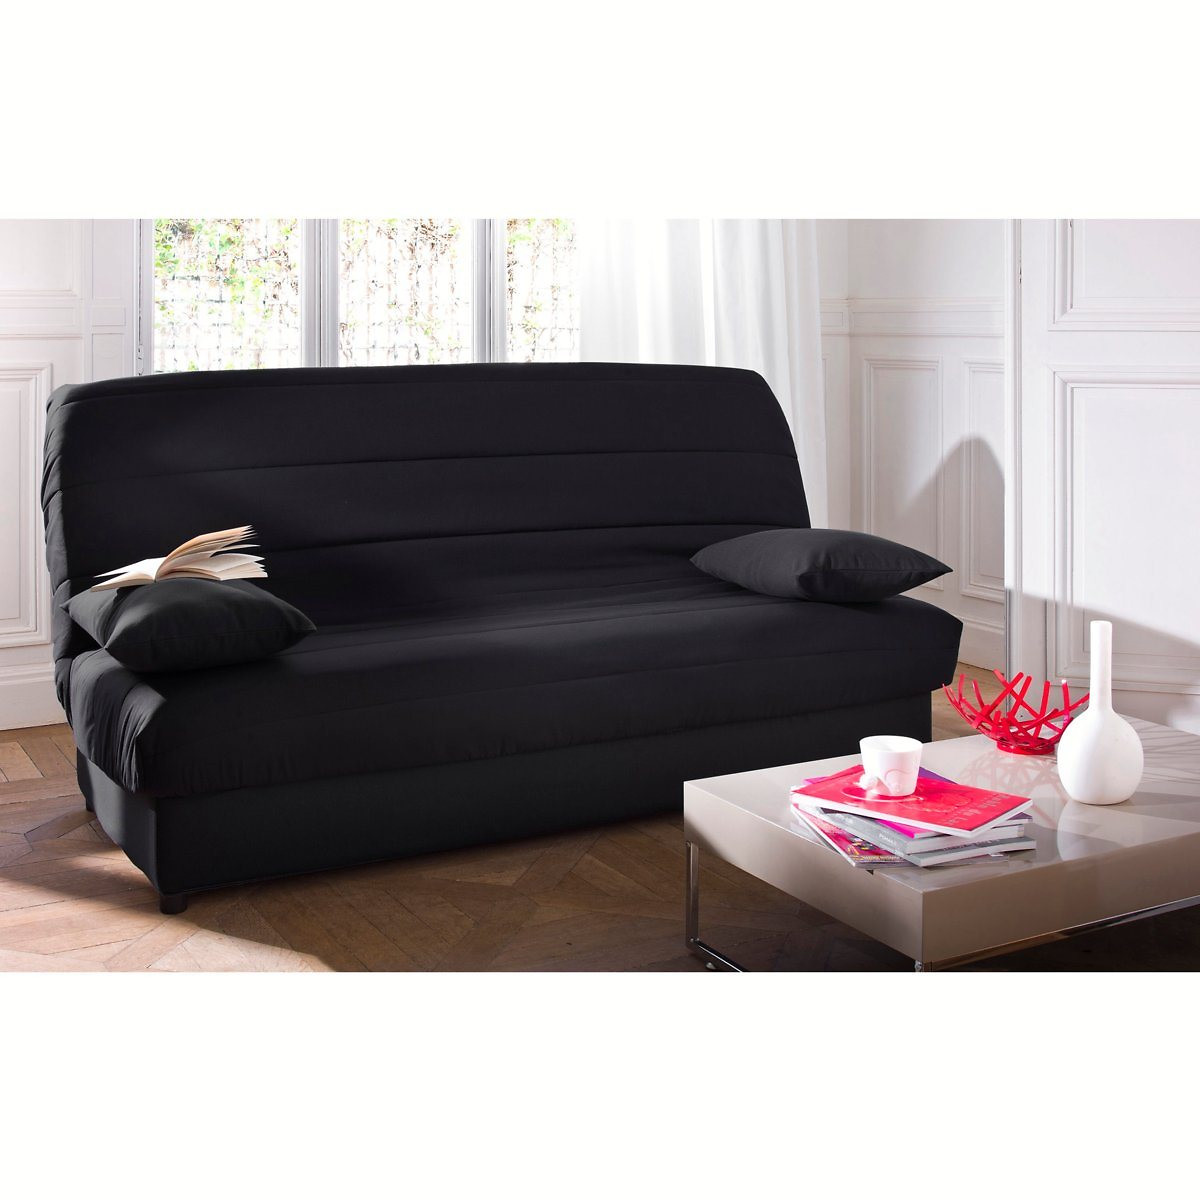  JLKC Funda protectora para sofá cama Clic Clac, funda  protectora de futón elástica de elastano, antideslizante y elástica para  2-3 plazas (color #22, tamaño: 59.1-70.9 in) : Hogar y Cocina